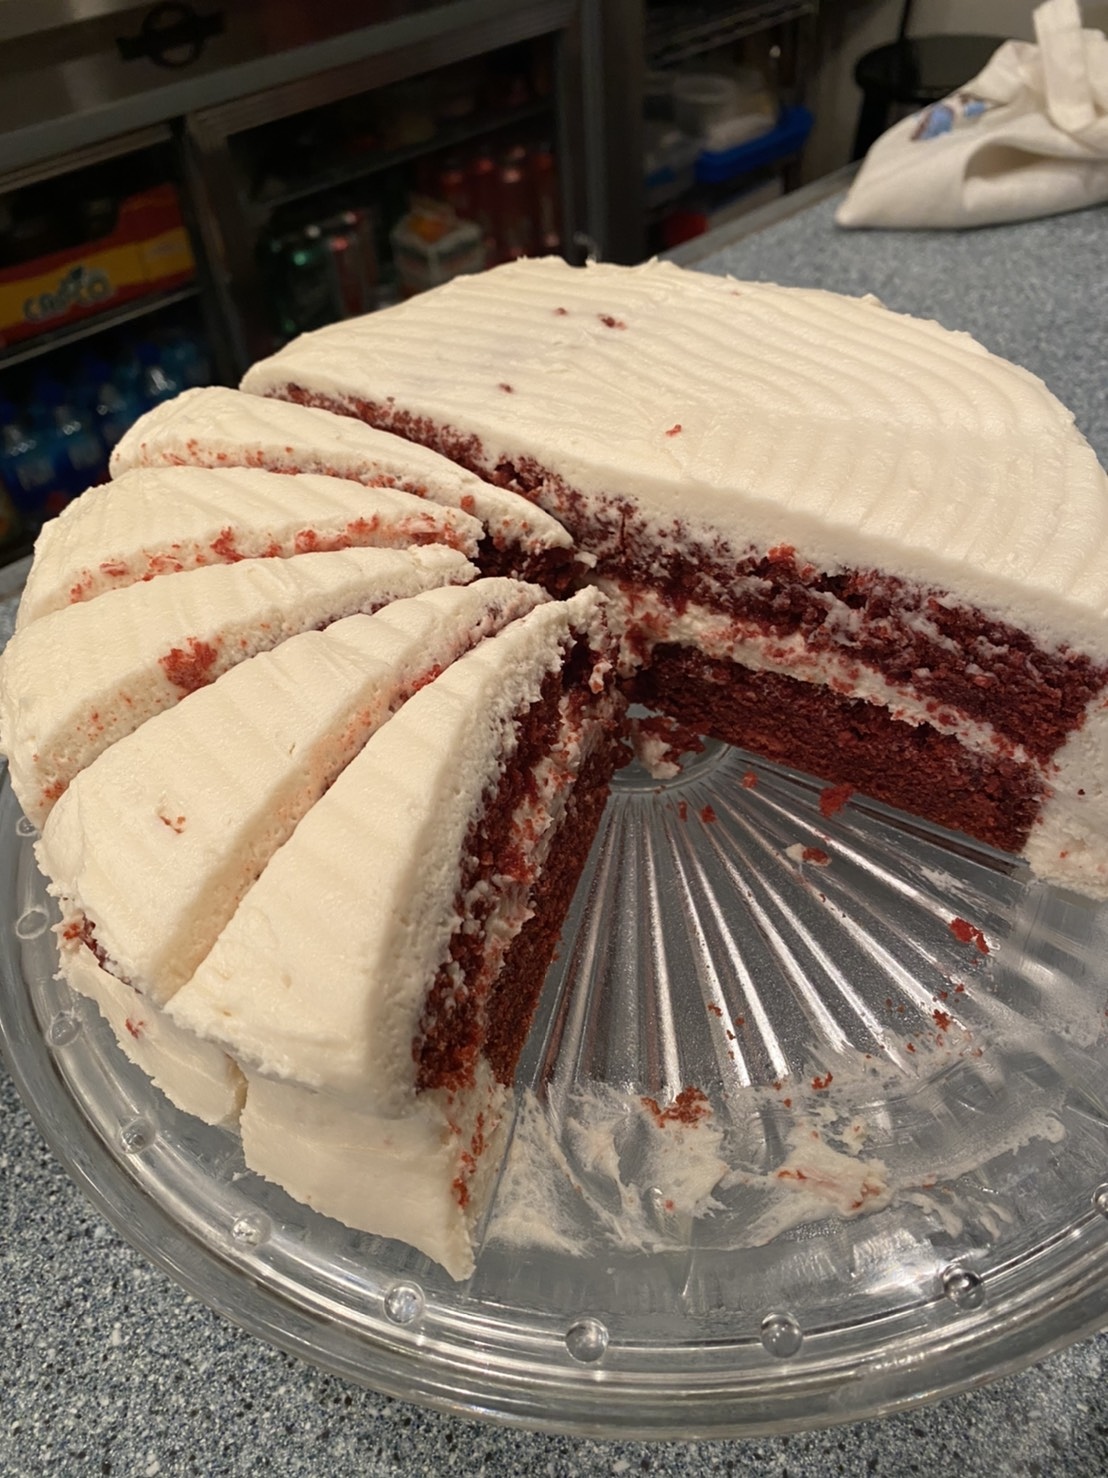 Red velvet cake 